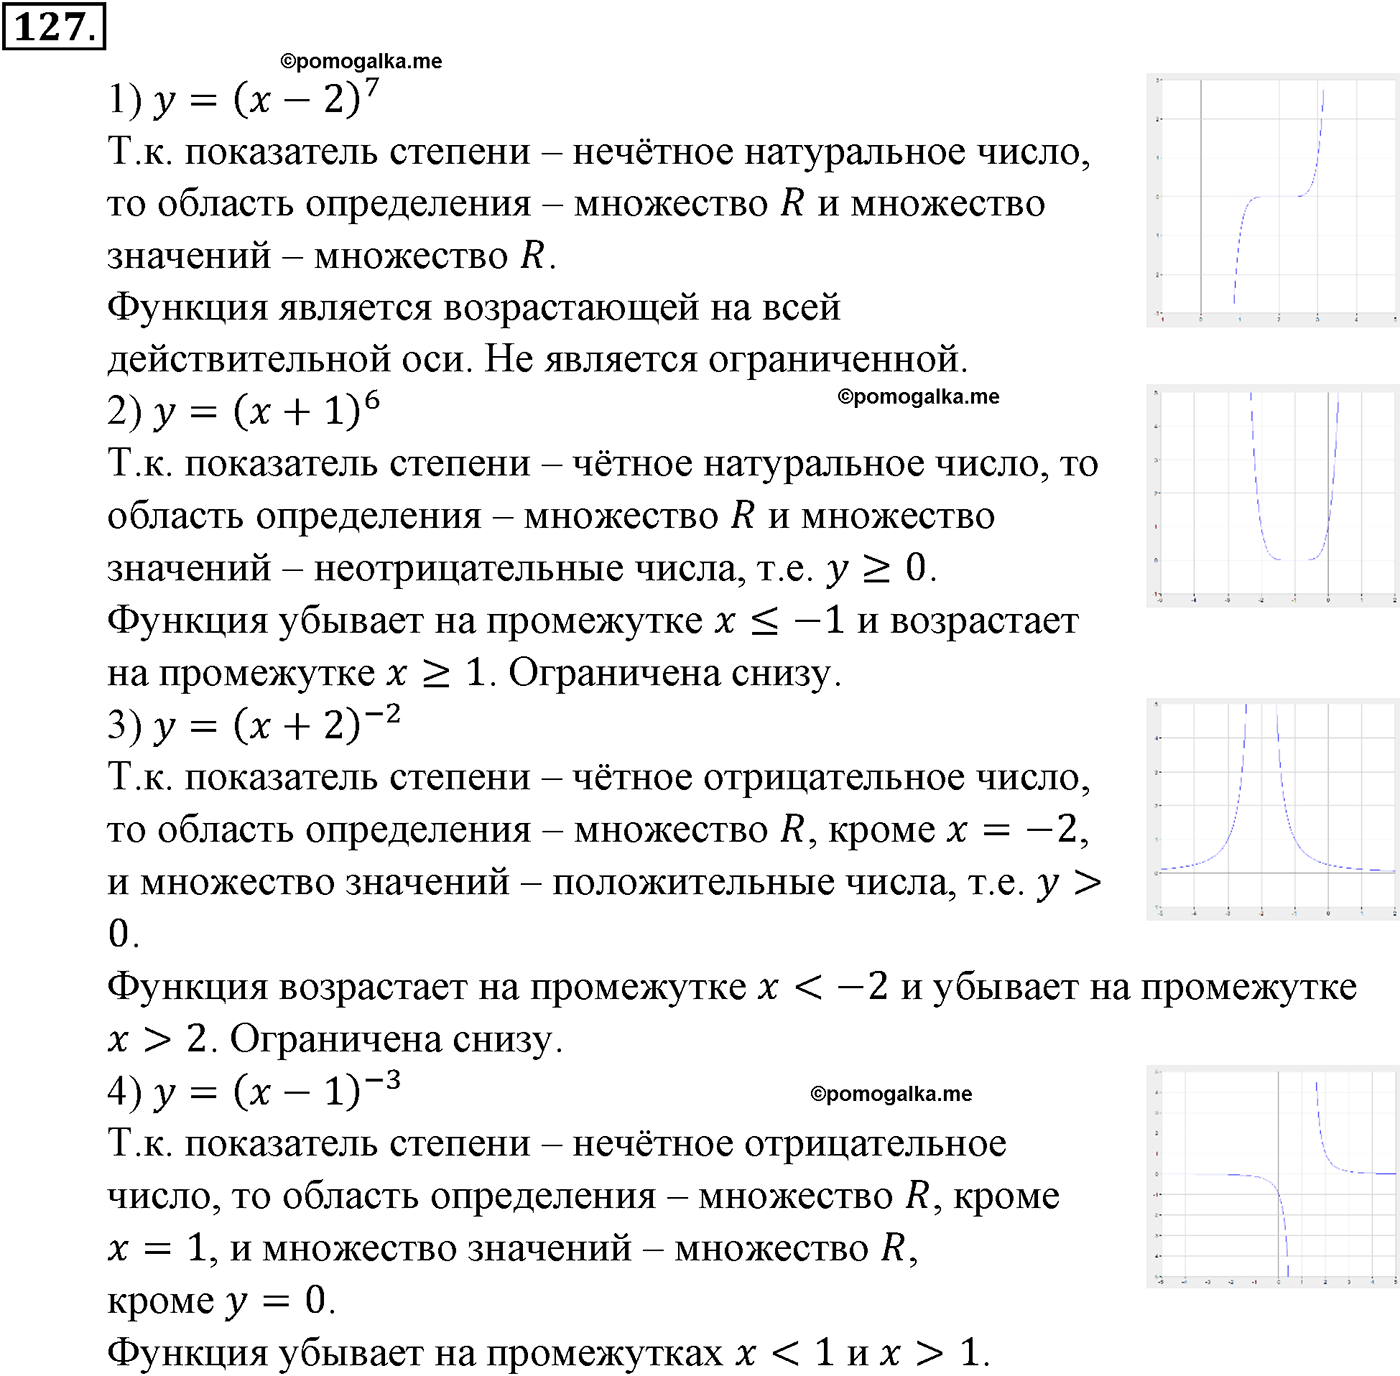 разбор задачи №127 по алгебре за 10-11 класс из учебника Алимова, Колягина